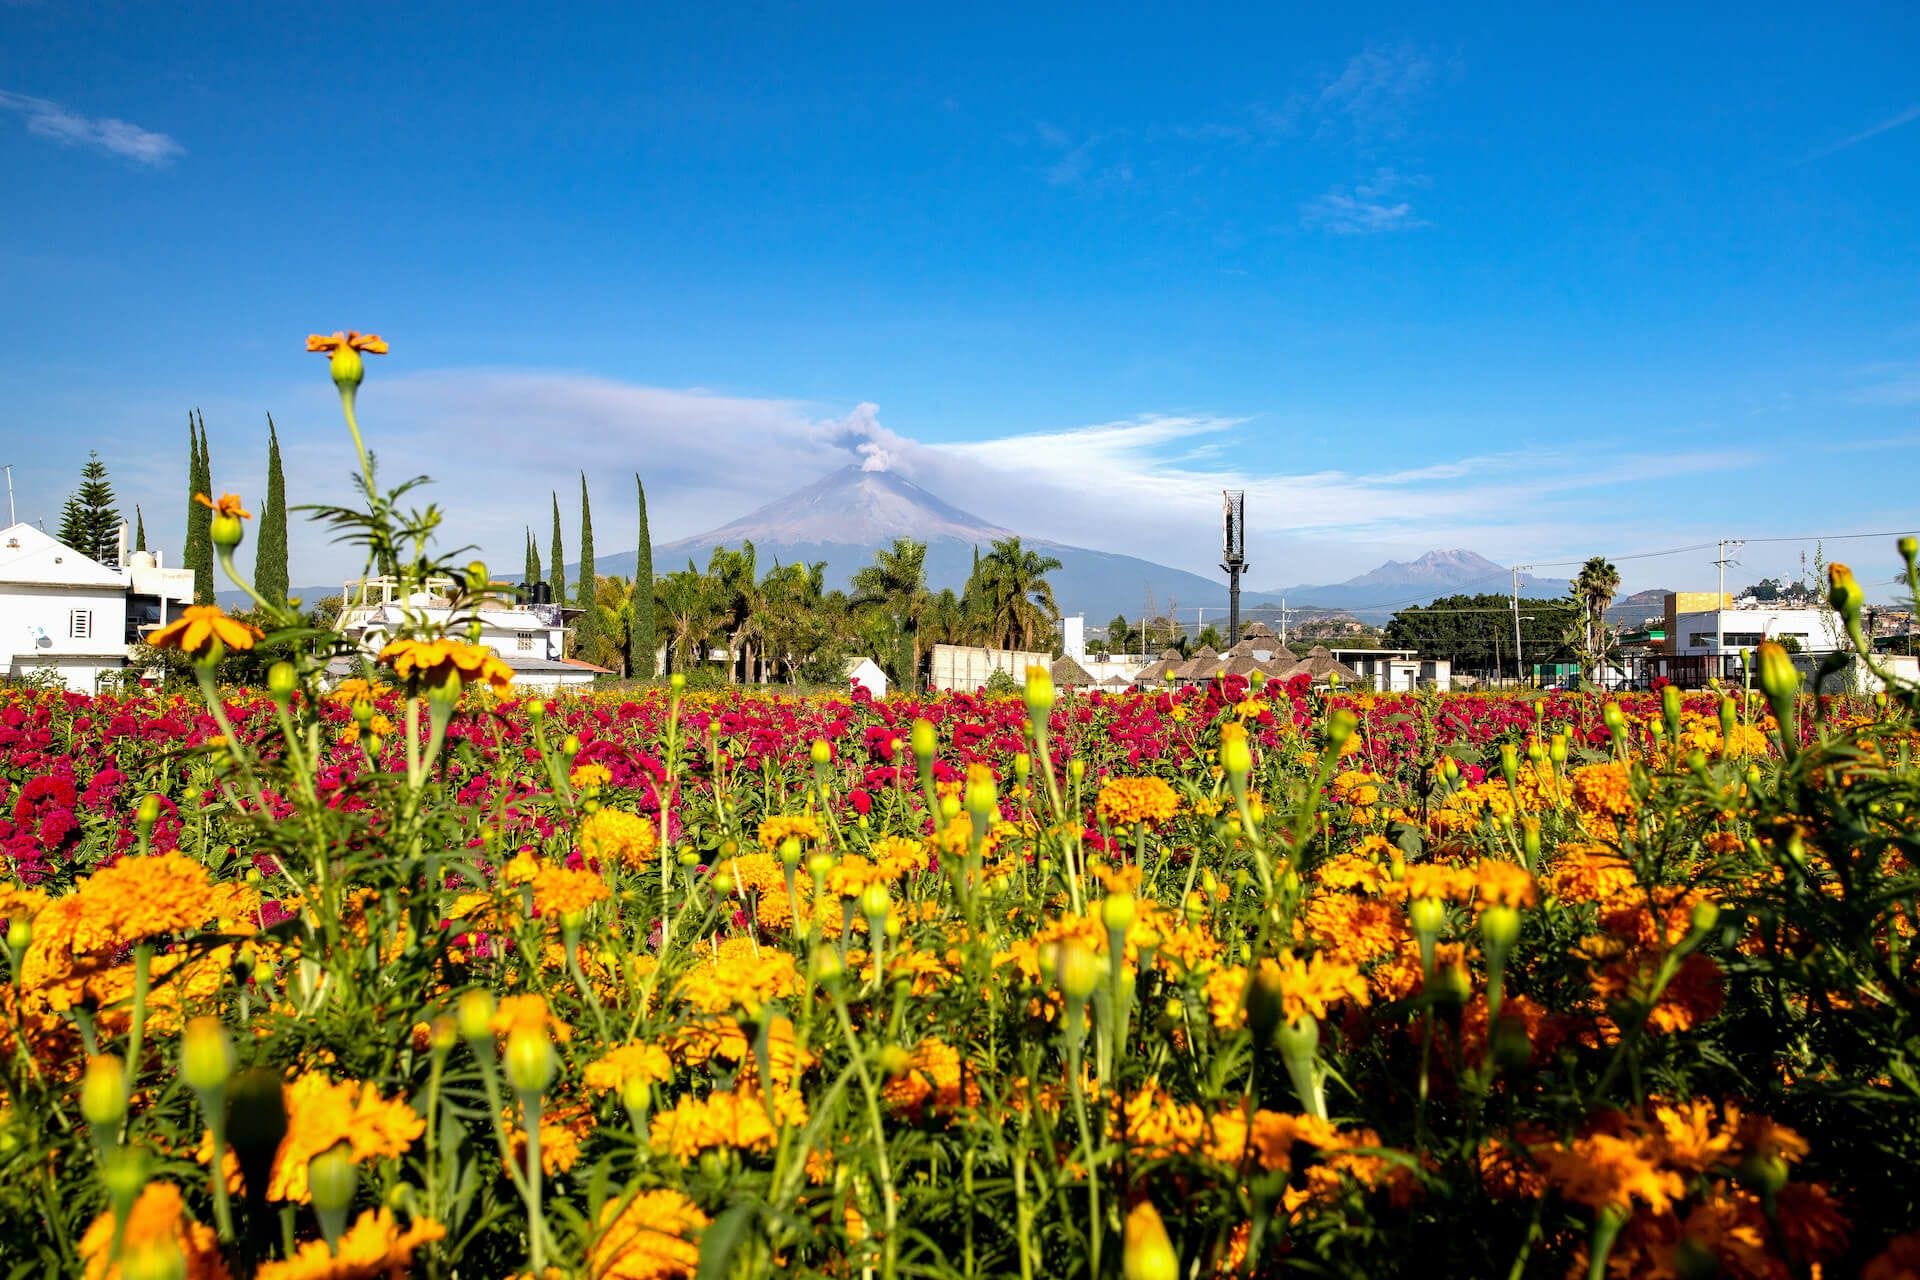 Cempasúchil fields around the Popocatépetl Volcano. (Photo: Václav Lang)